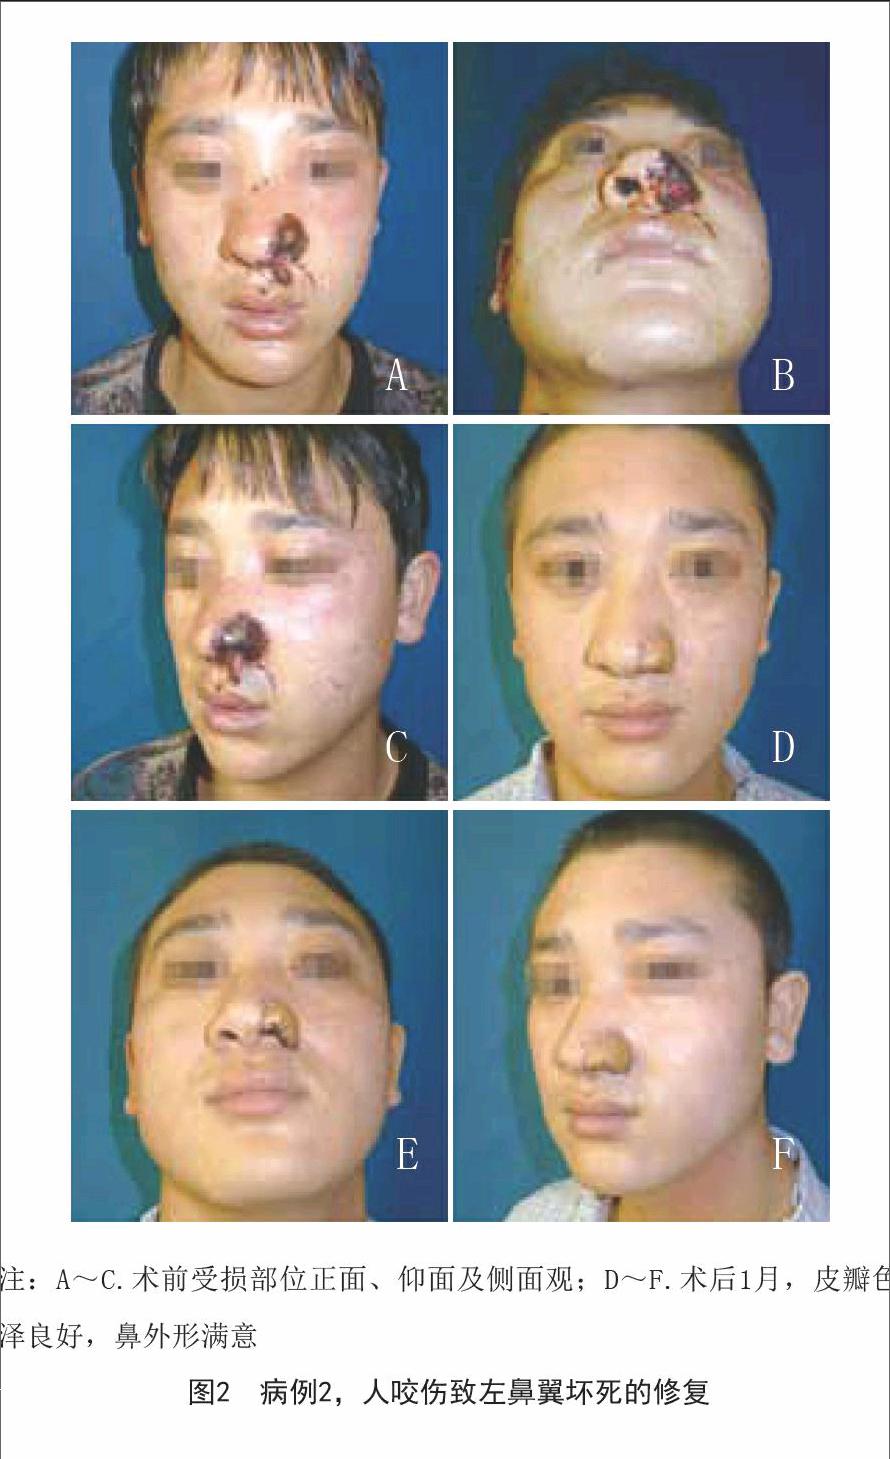 所有患者的移植皮瓣完全成活,皮瓣色泽,质地与面部皮肤接近,鼻外形